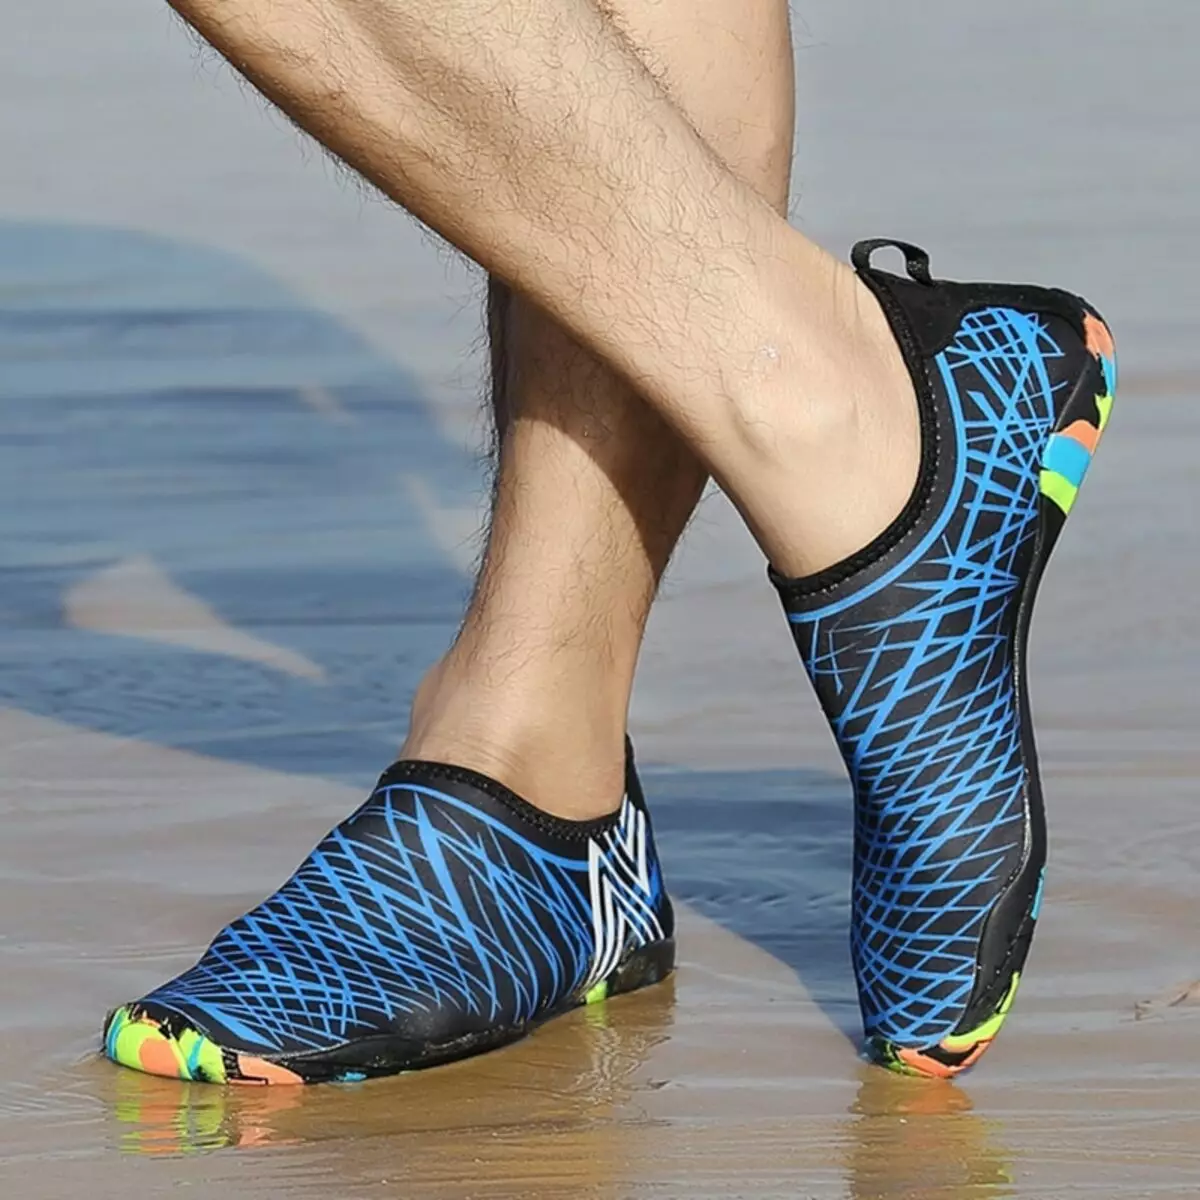 обувь для галечного пляжа как называется